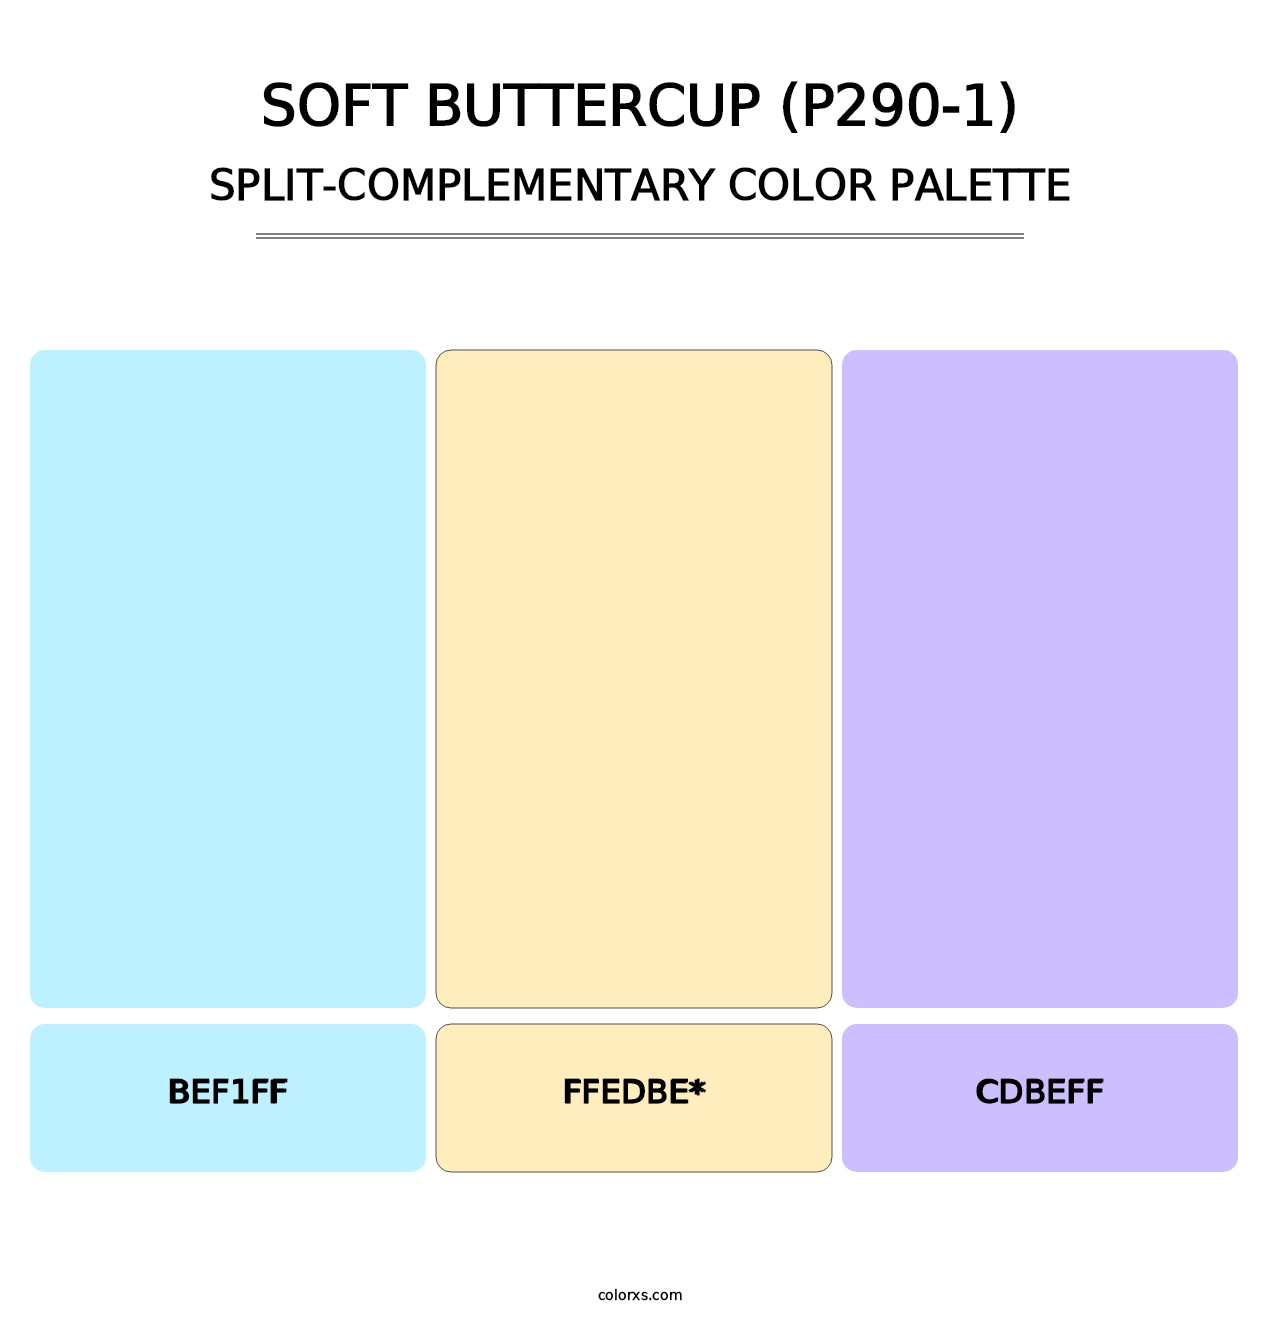 Soft Buttercup (P290-1) - Split-Complementary Color Palette